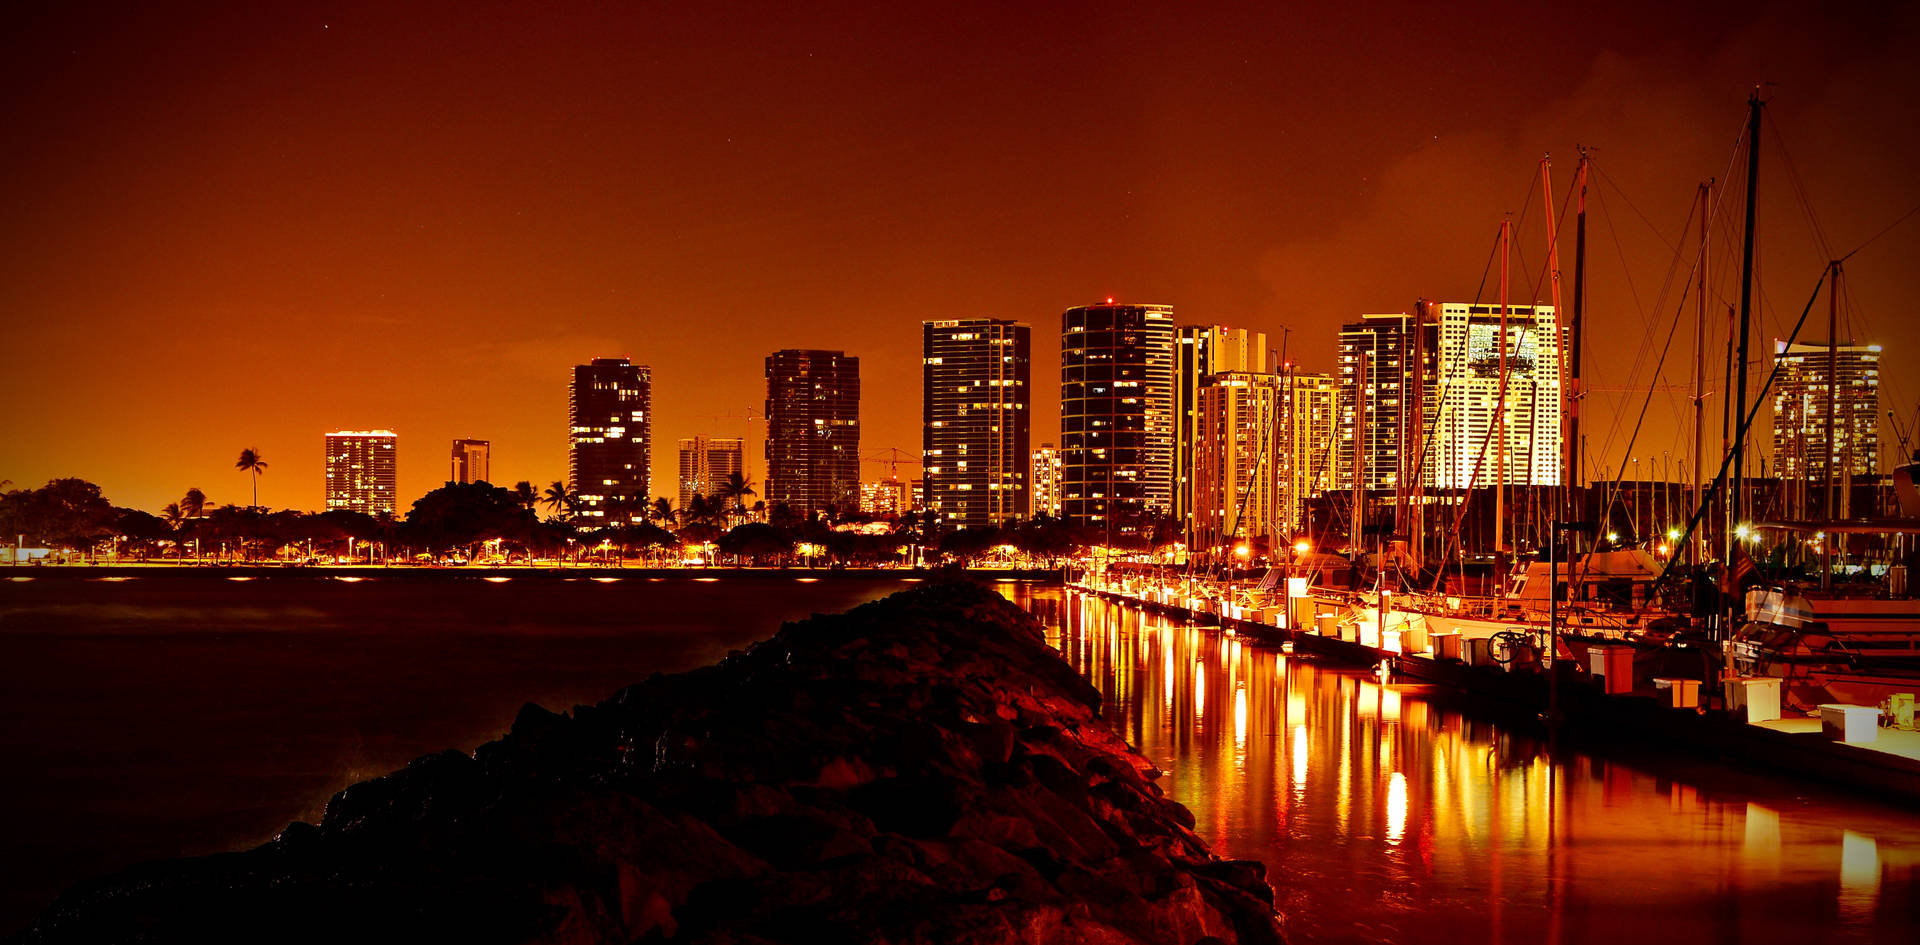 Glowing Night City Reflection